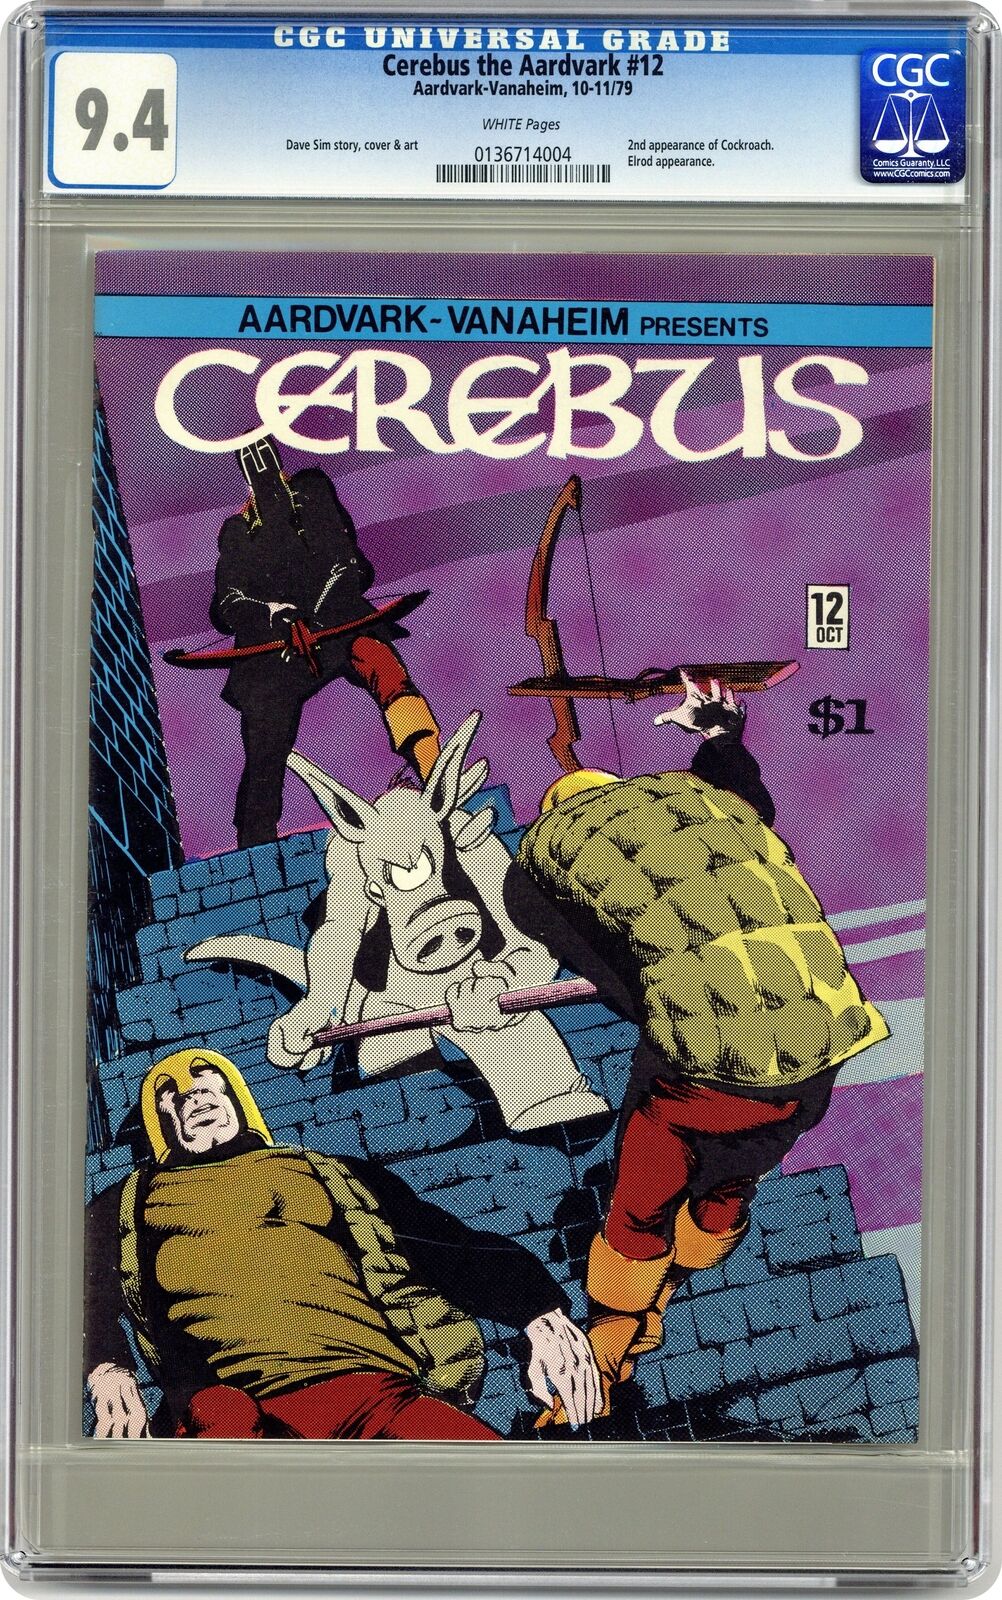 Cerebus #12 CGC 9.4 1979 0136714004